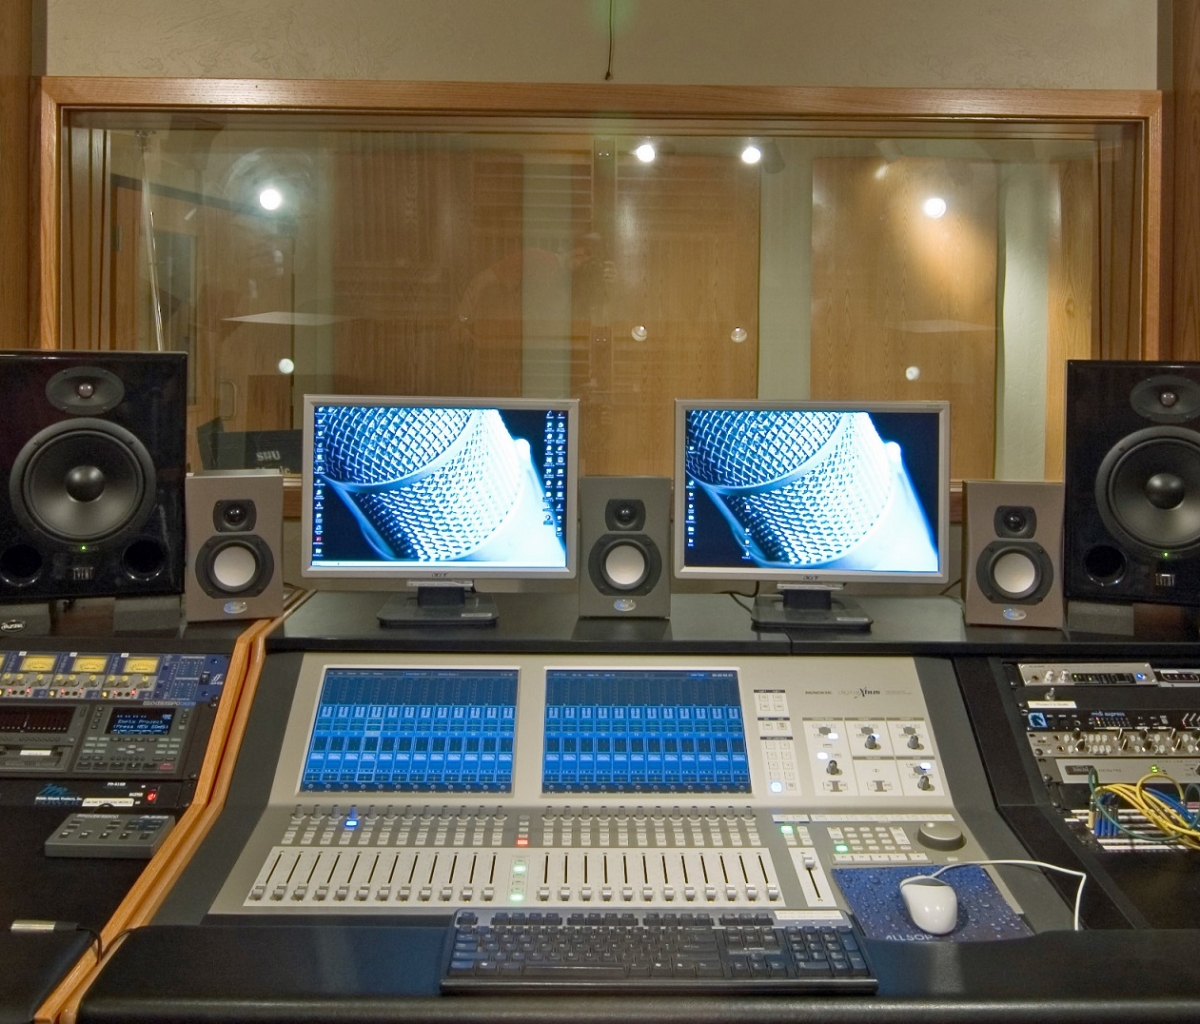 Recording Studio Equipment - HD Wallpaper 